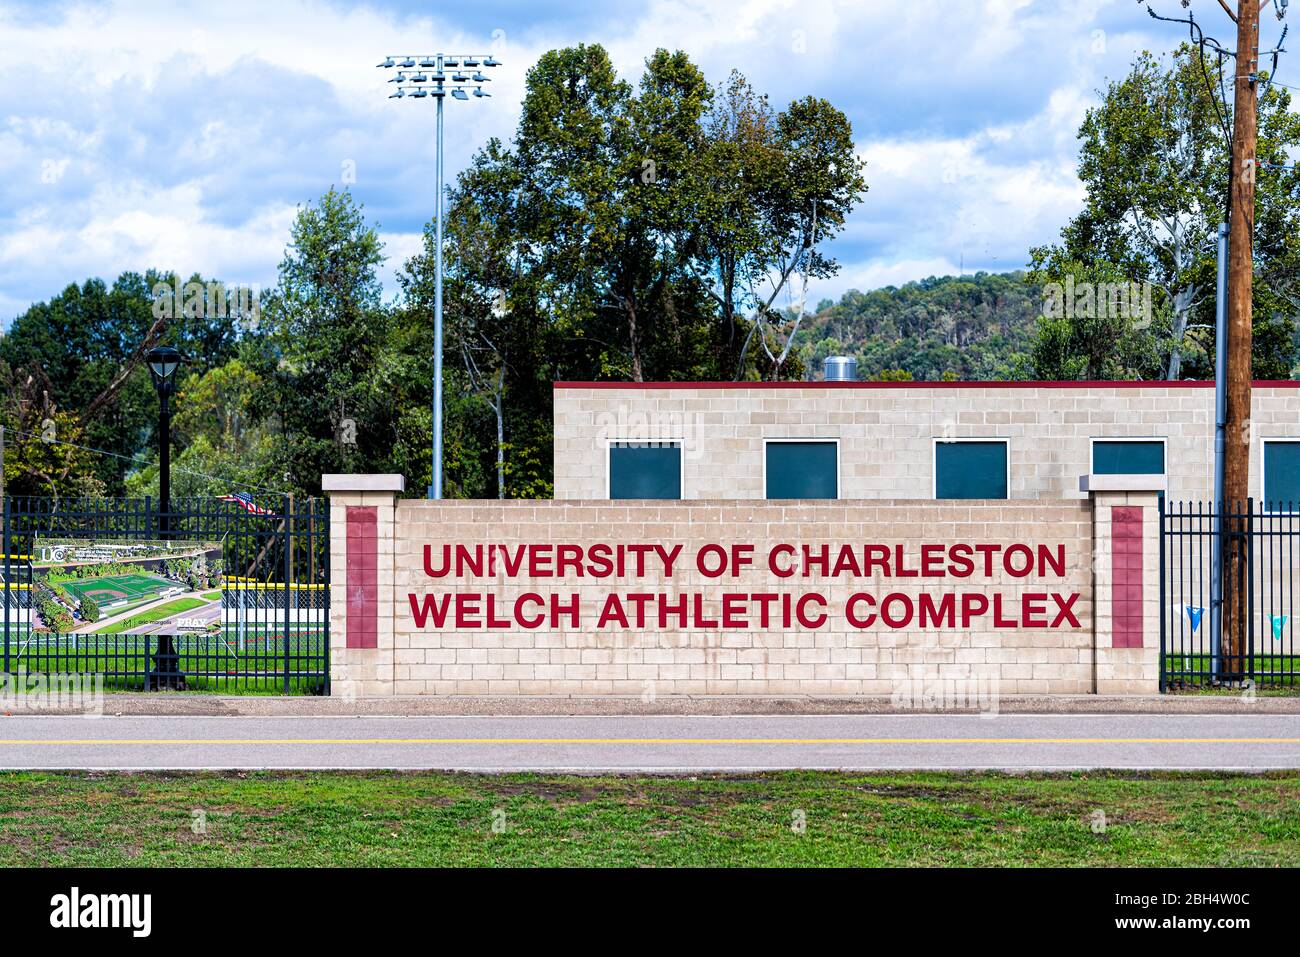 Charleston, USA - 17. Oktober 2019: Universitätscampus in West Virginia Hauptstadt mit UC Welch Athletic Komplex Schild auf modernen privaten Gebäude und Stockfoto